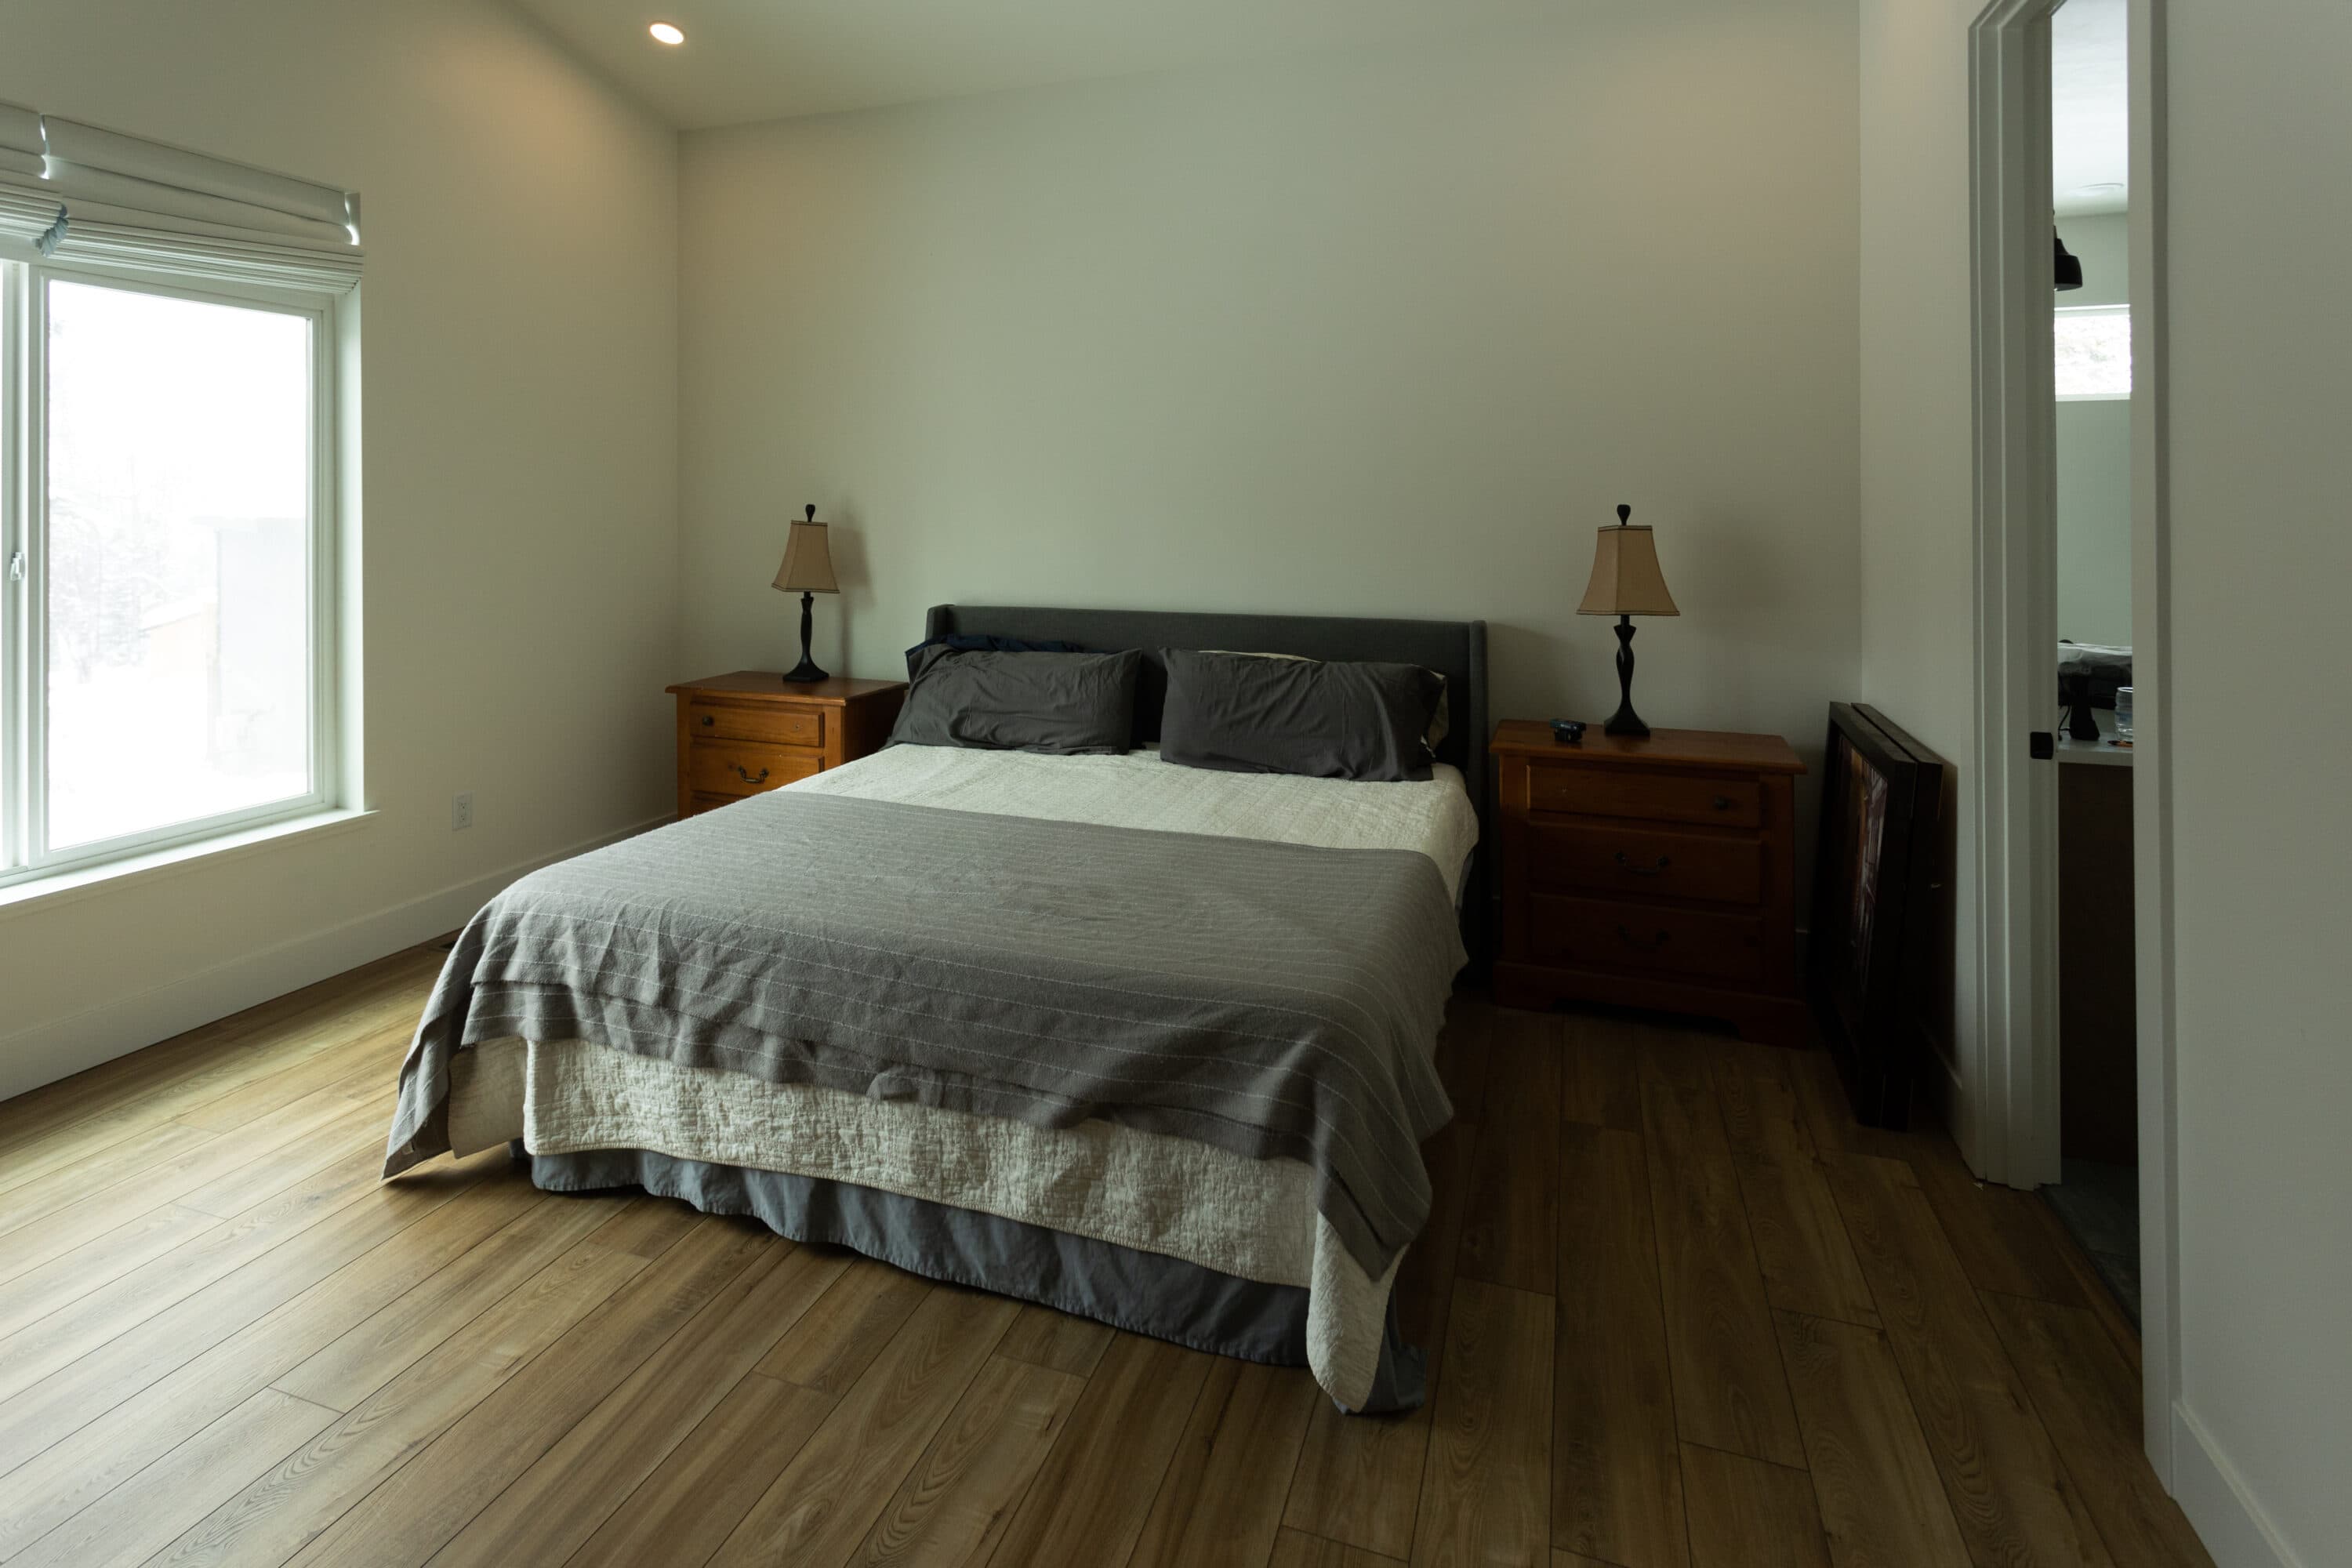 How do I make my blank bedroom feel cozier?